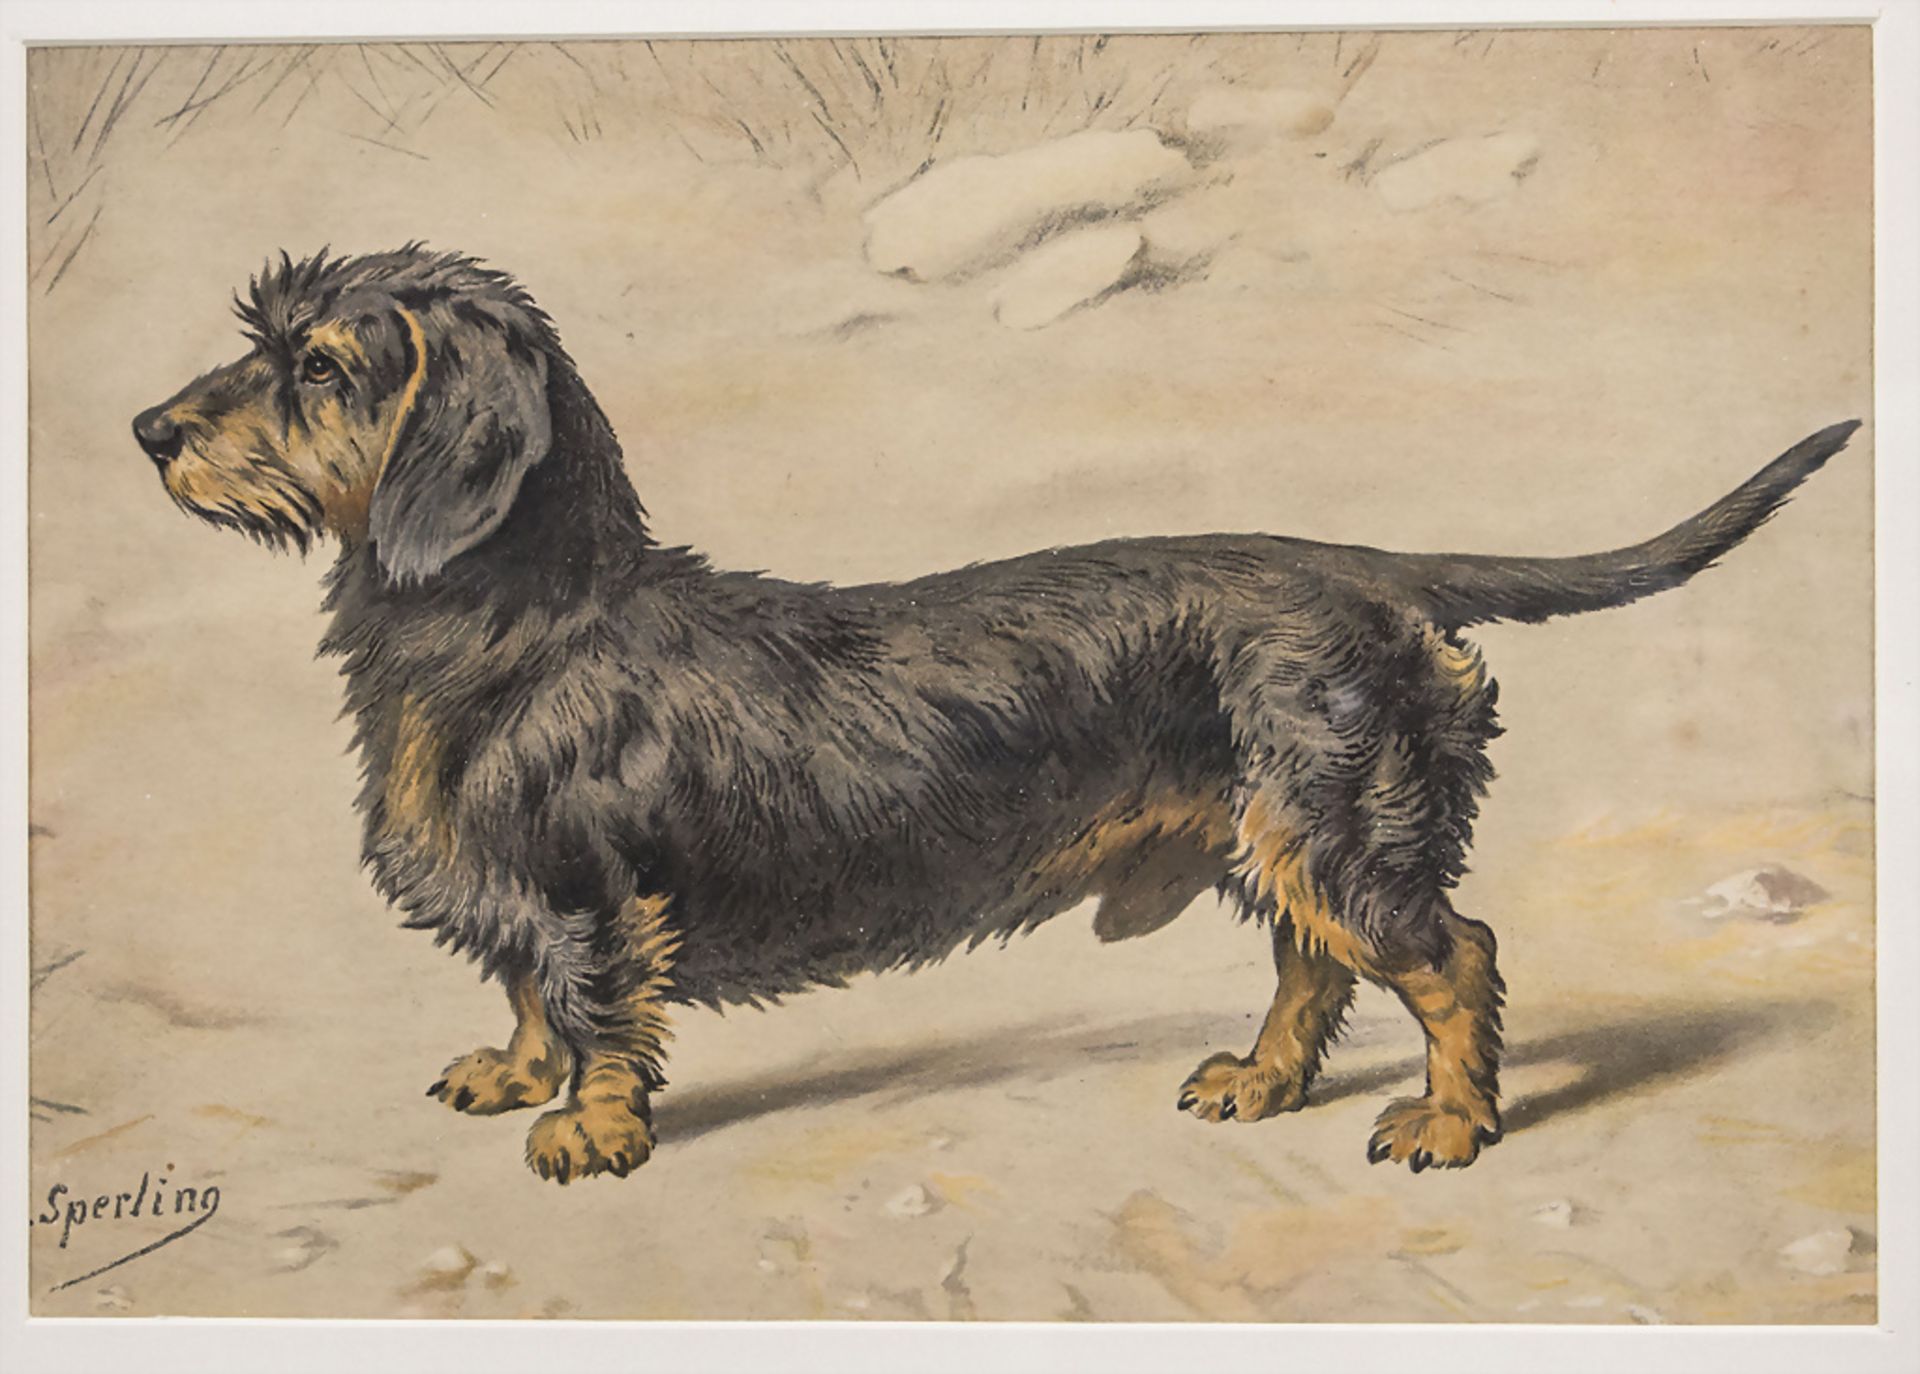 Heinrich Sperling (1844-1924), 'Der Rauhaardackel' / 'The wire-haired dachshund'